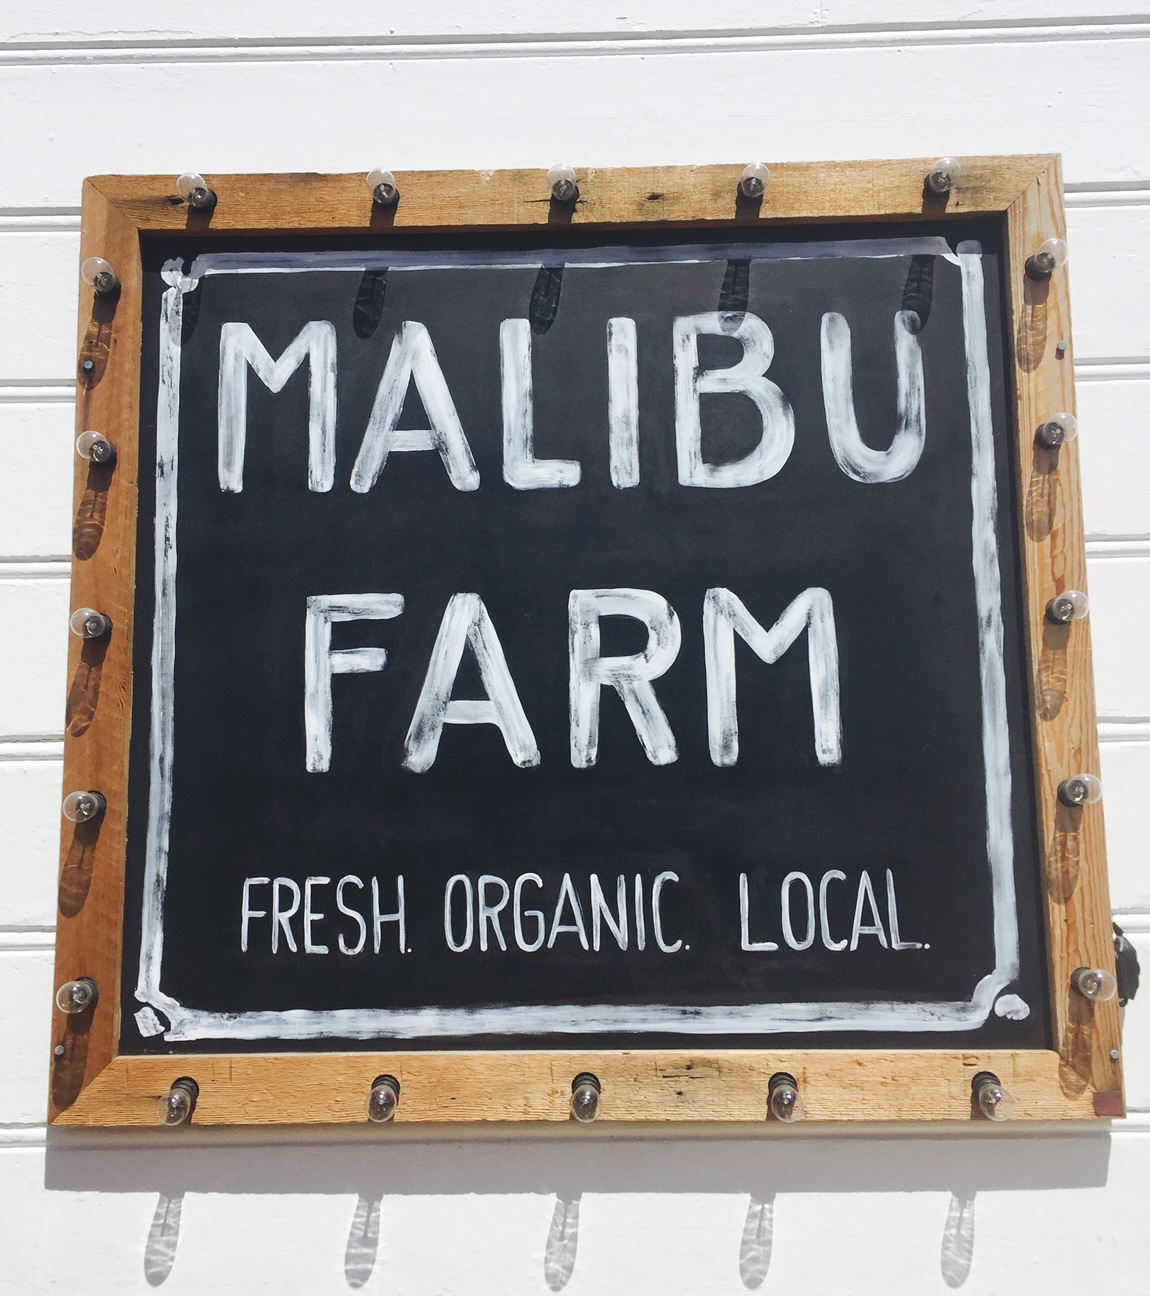 Malibu Farm